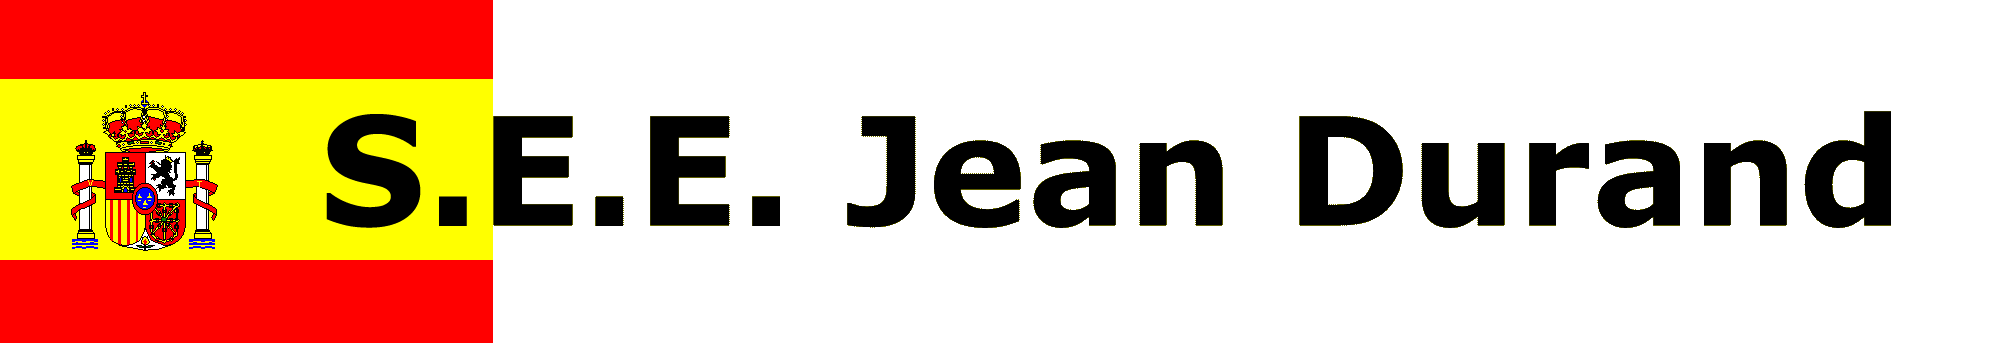 S.E.E. Jean Durand